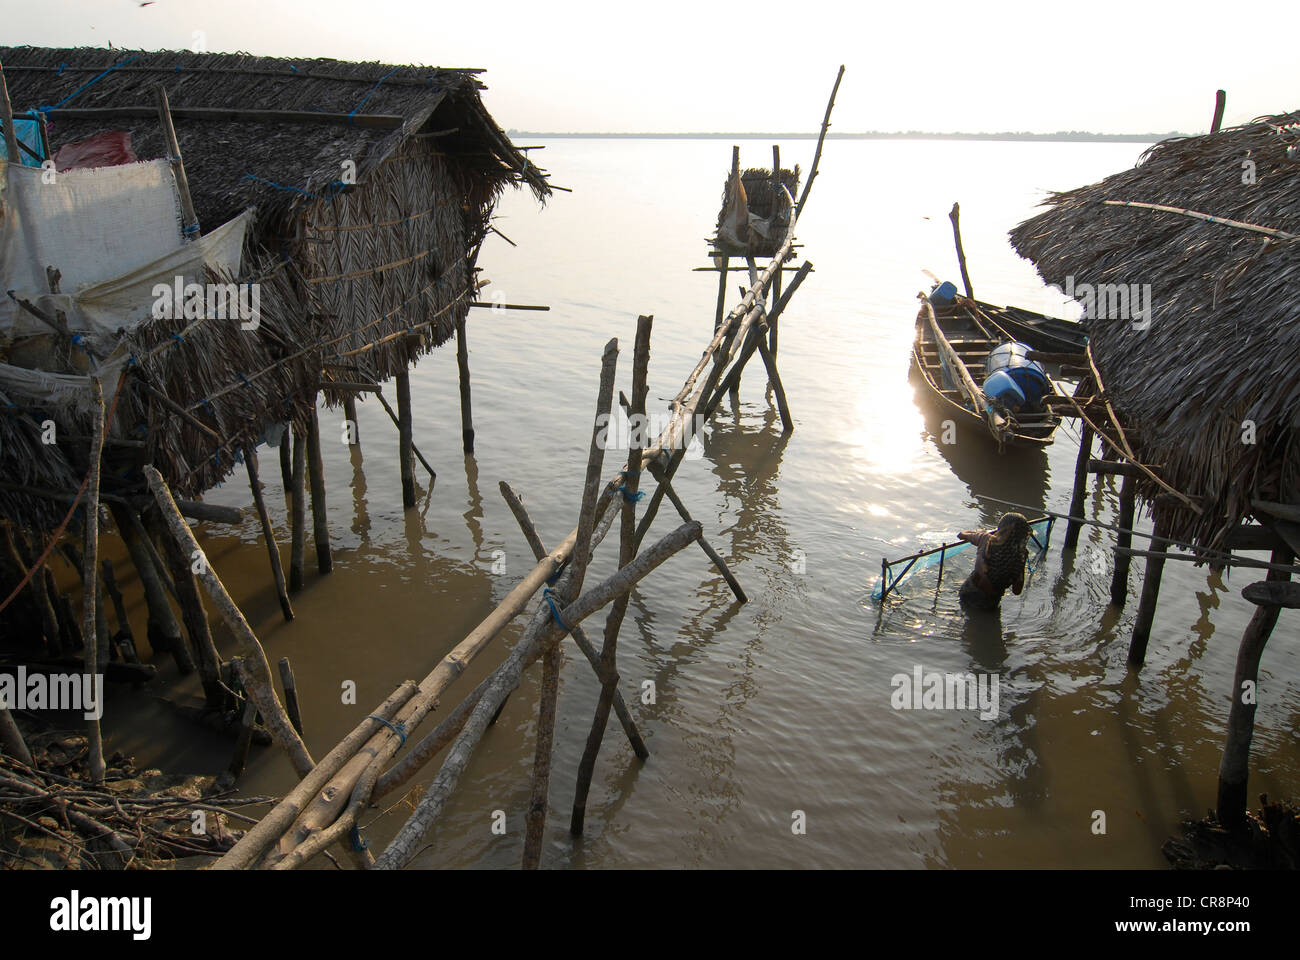 Bangladesh , villaggio Kalabogi presso il river Shibsha vicino alla baia del Bengala, i popoli sono i più colpiti dal cambiamento climatico Foto Stock